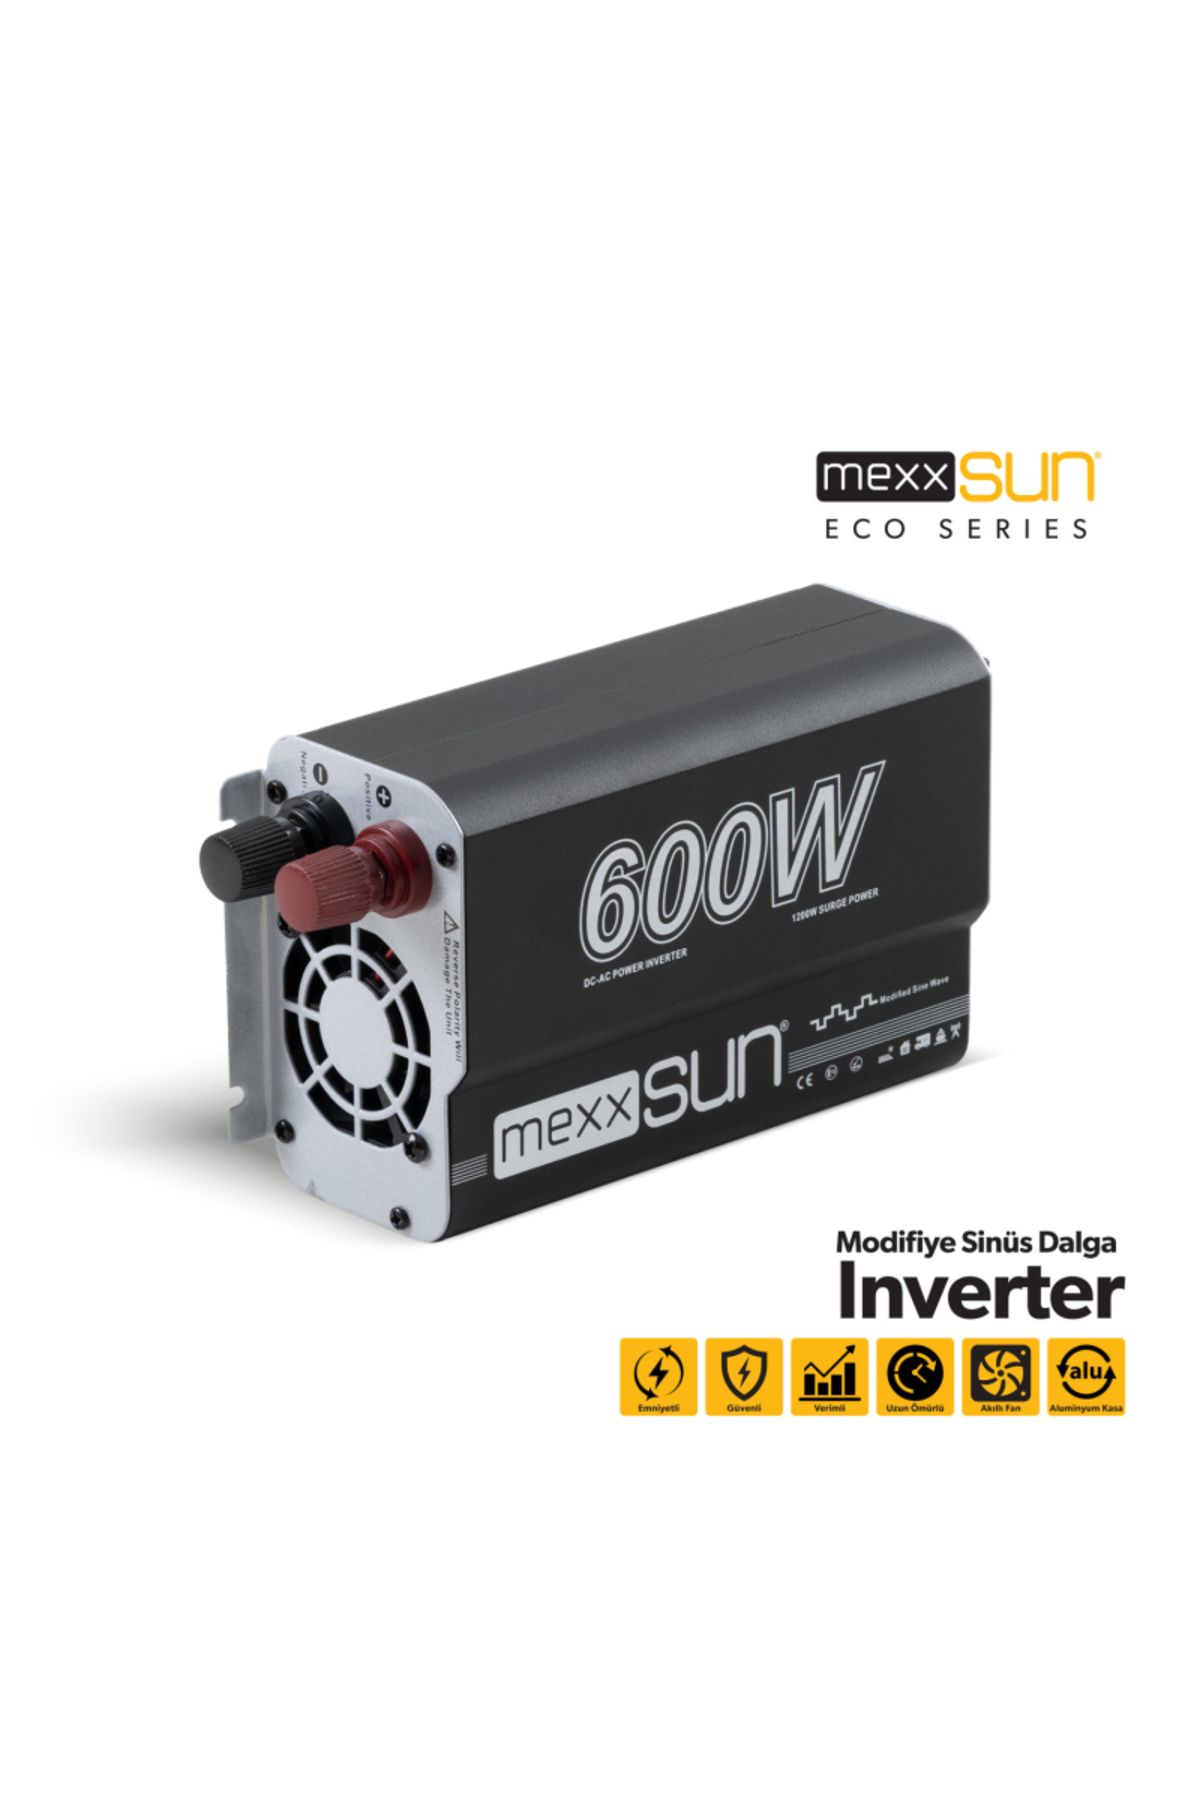 MEXXSUN ® Modifiye Sinüs Inverter 12v 600w Ea9792017